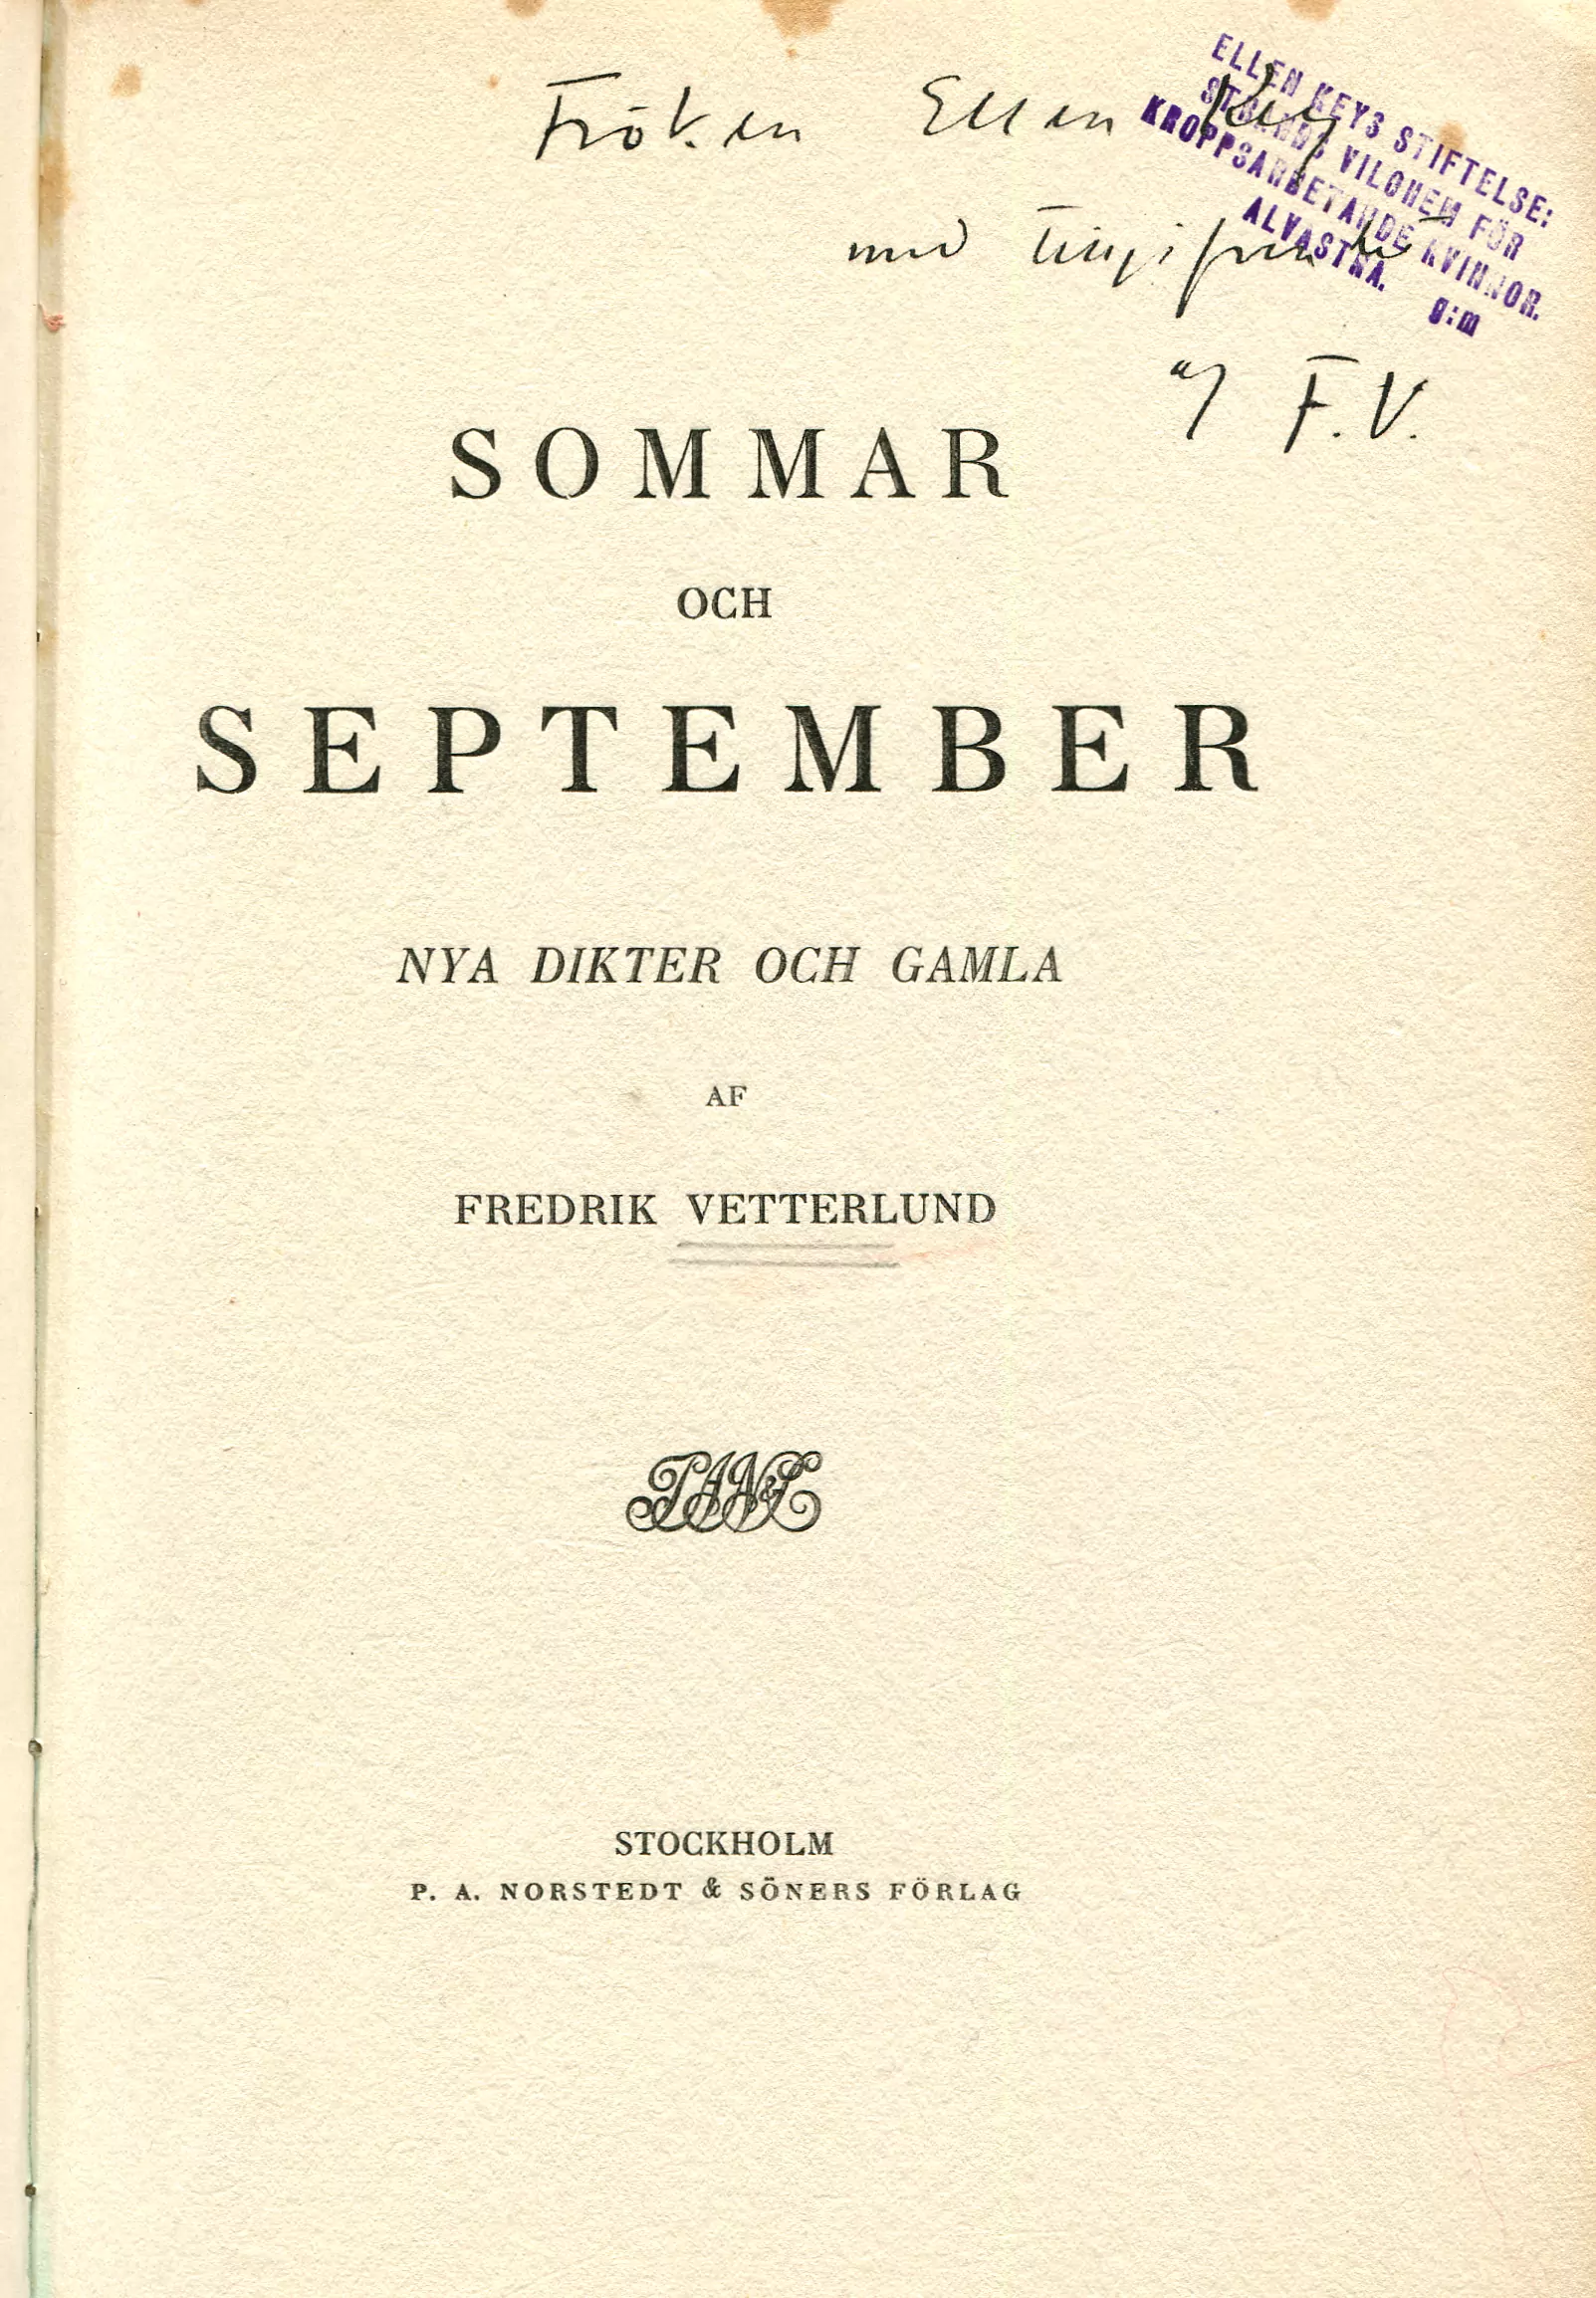 Sommar och september , Stockholm 1911